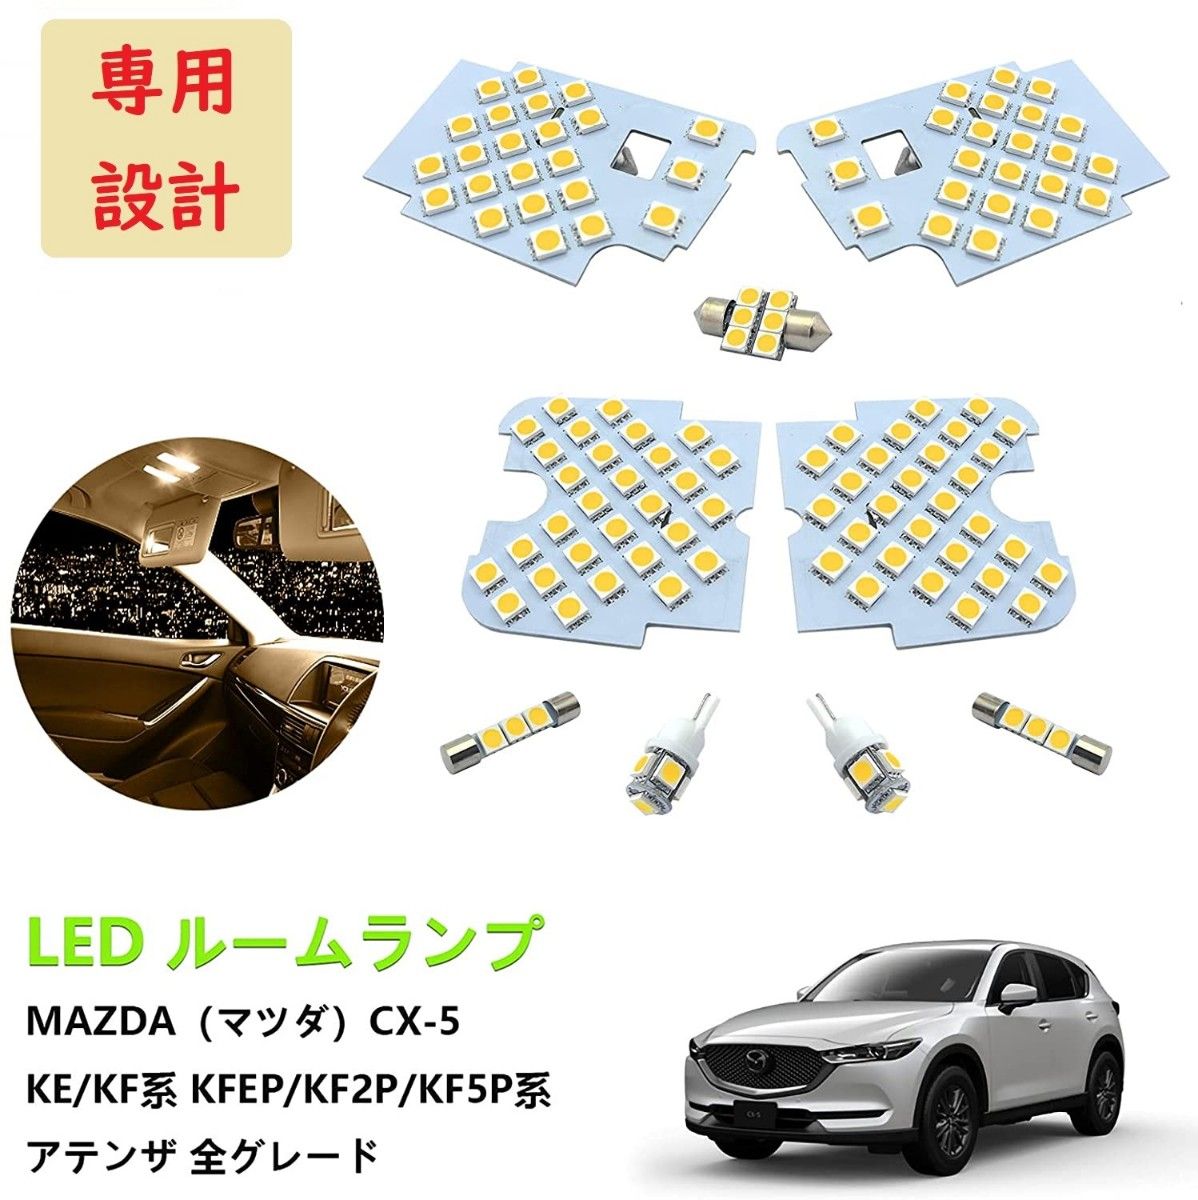 マツダ MAZDA CX-5 LED ルームランプ 専用設計 電球色 車検対応